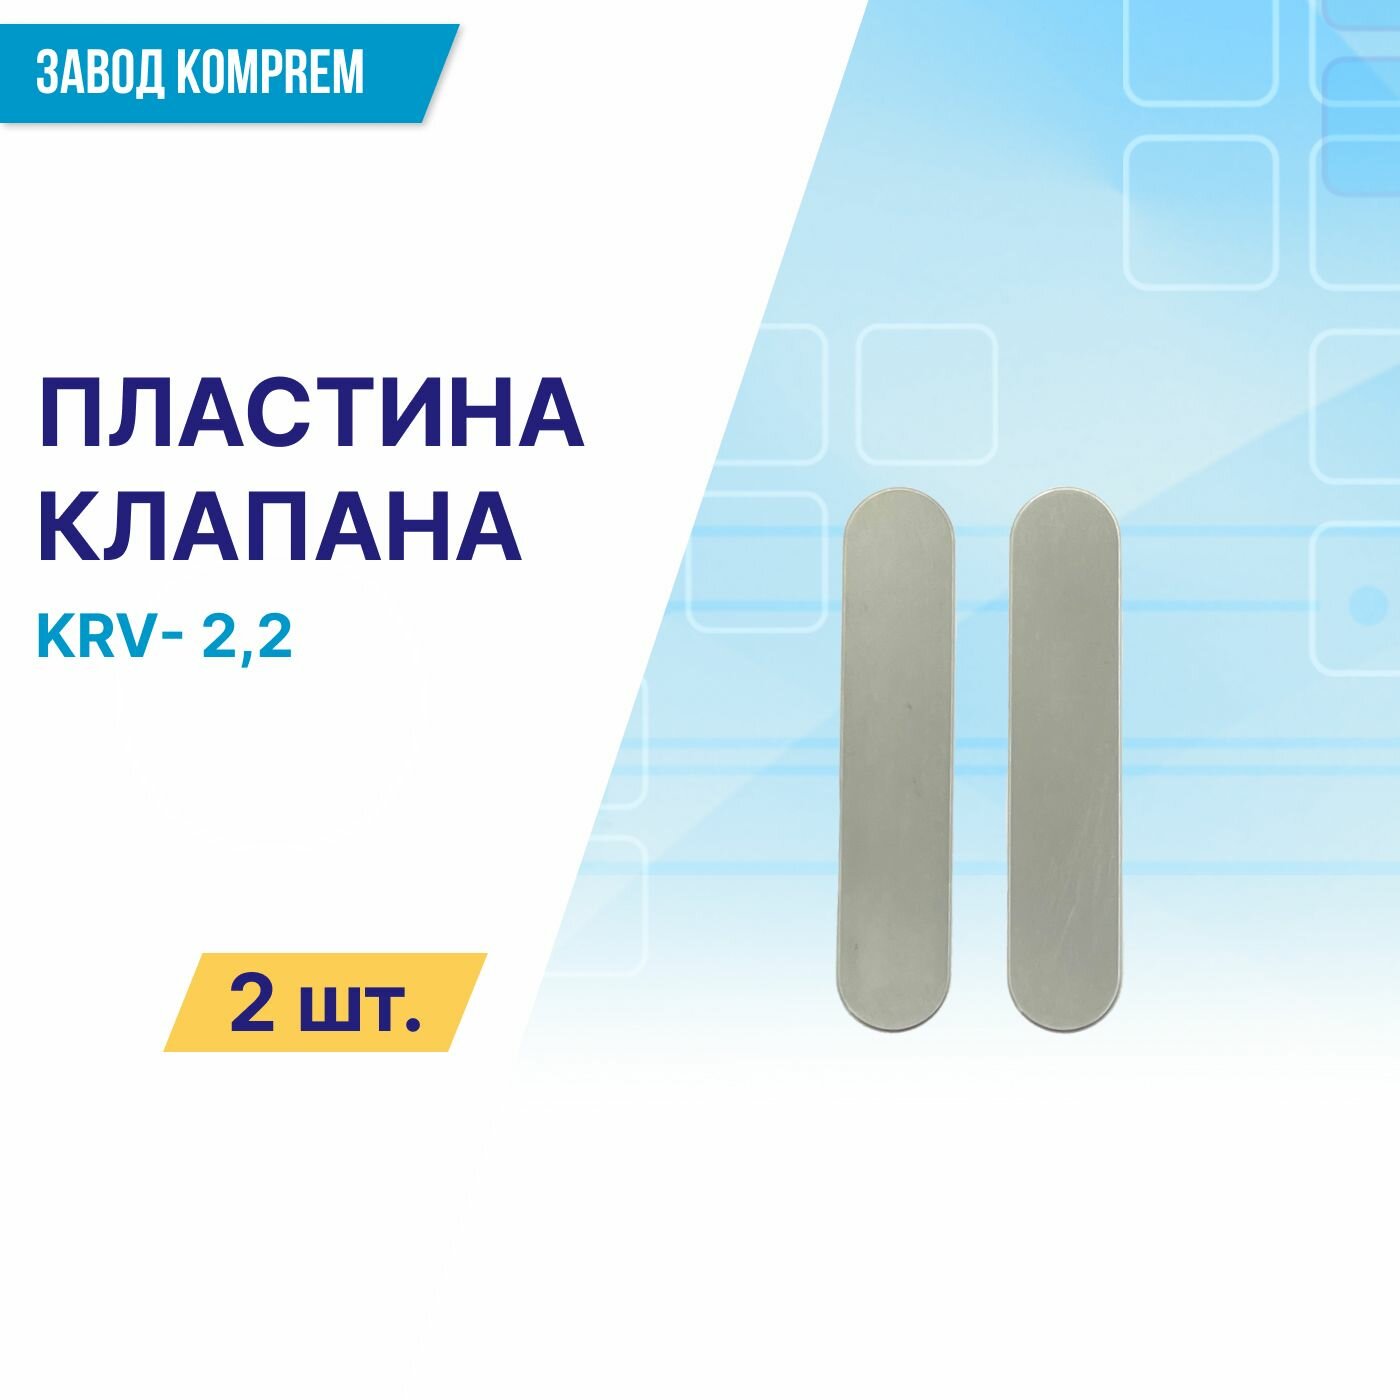 Клапанная пластина 11*55 (овальная) для компрессорной головки KRV22 (комплект 2 шт.) Komprem сталь